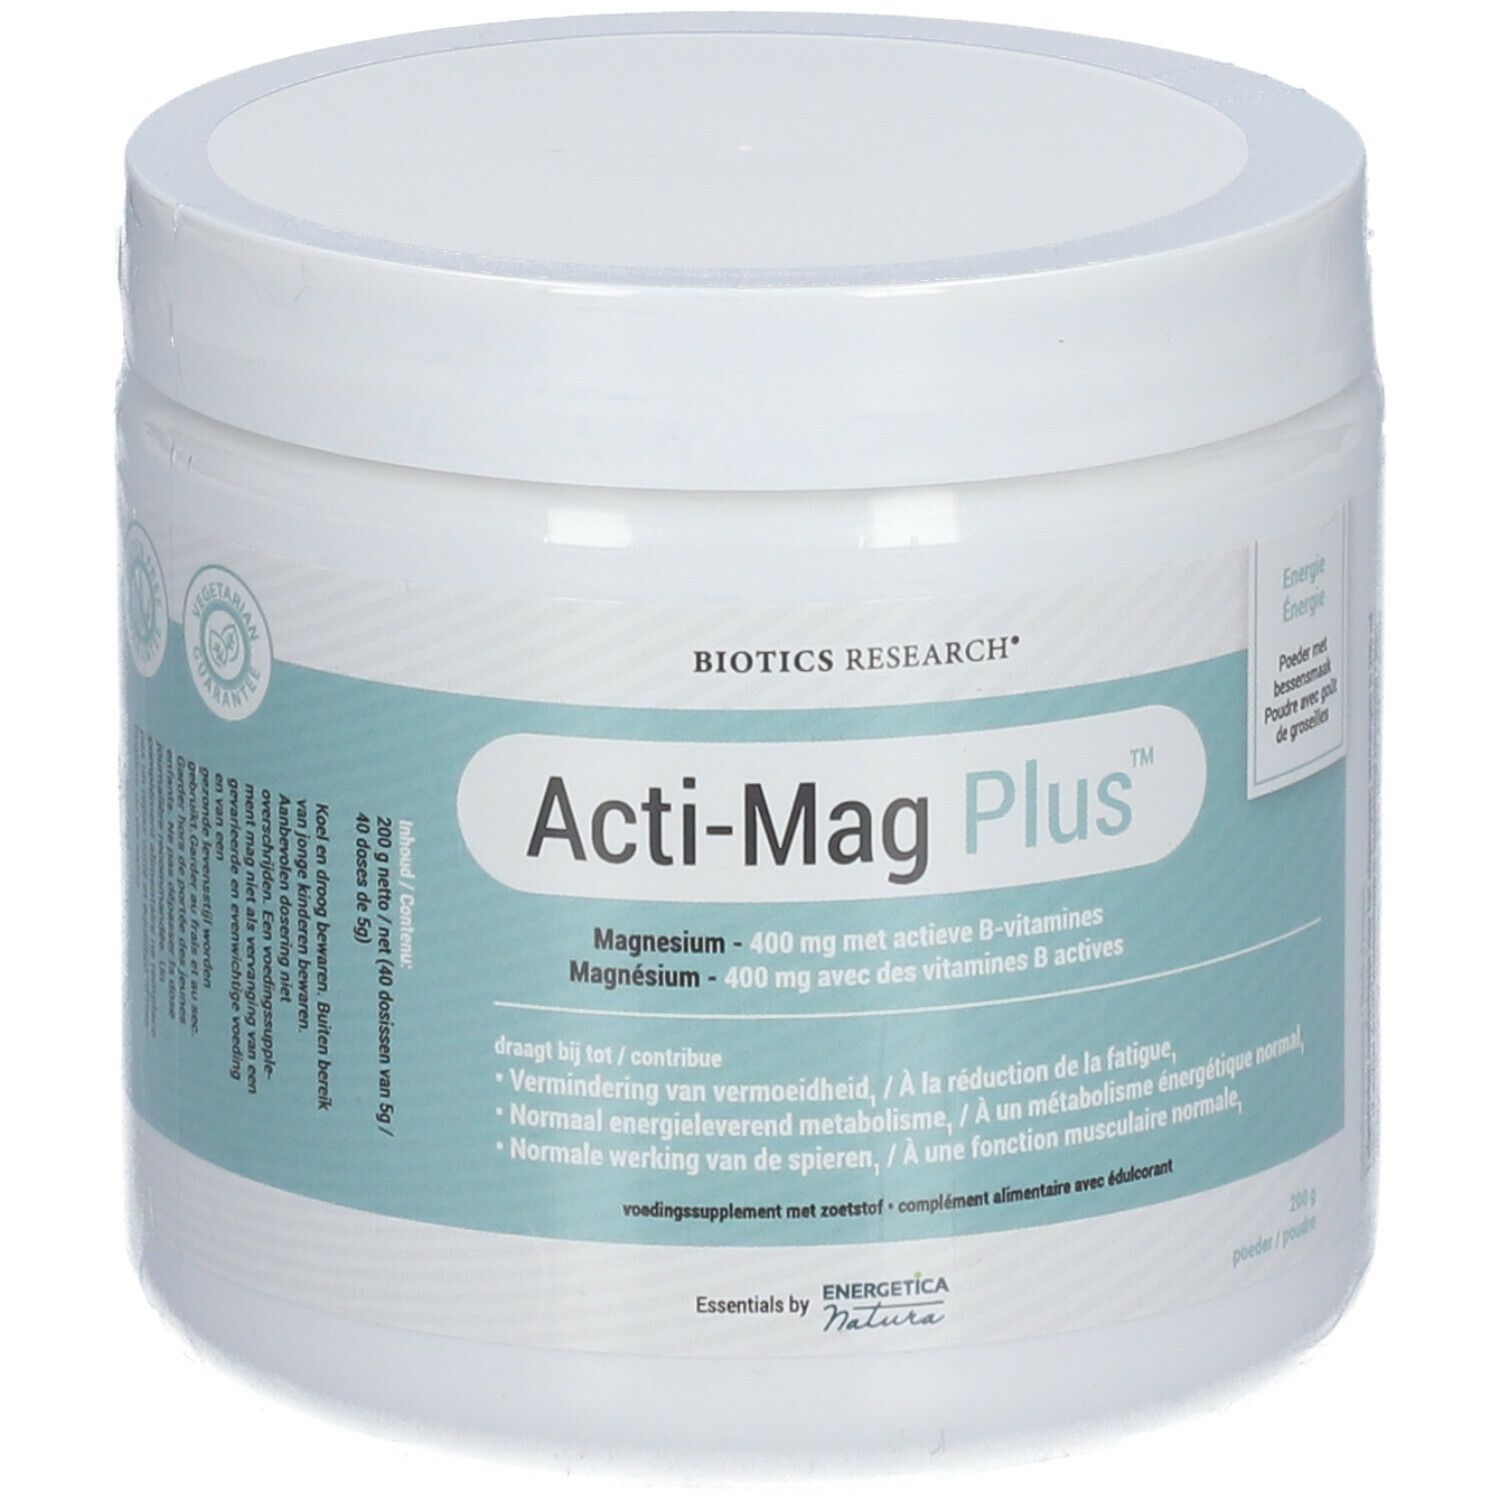 Biotics Research® Acti-Mag Plus™